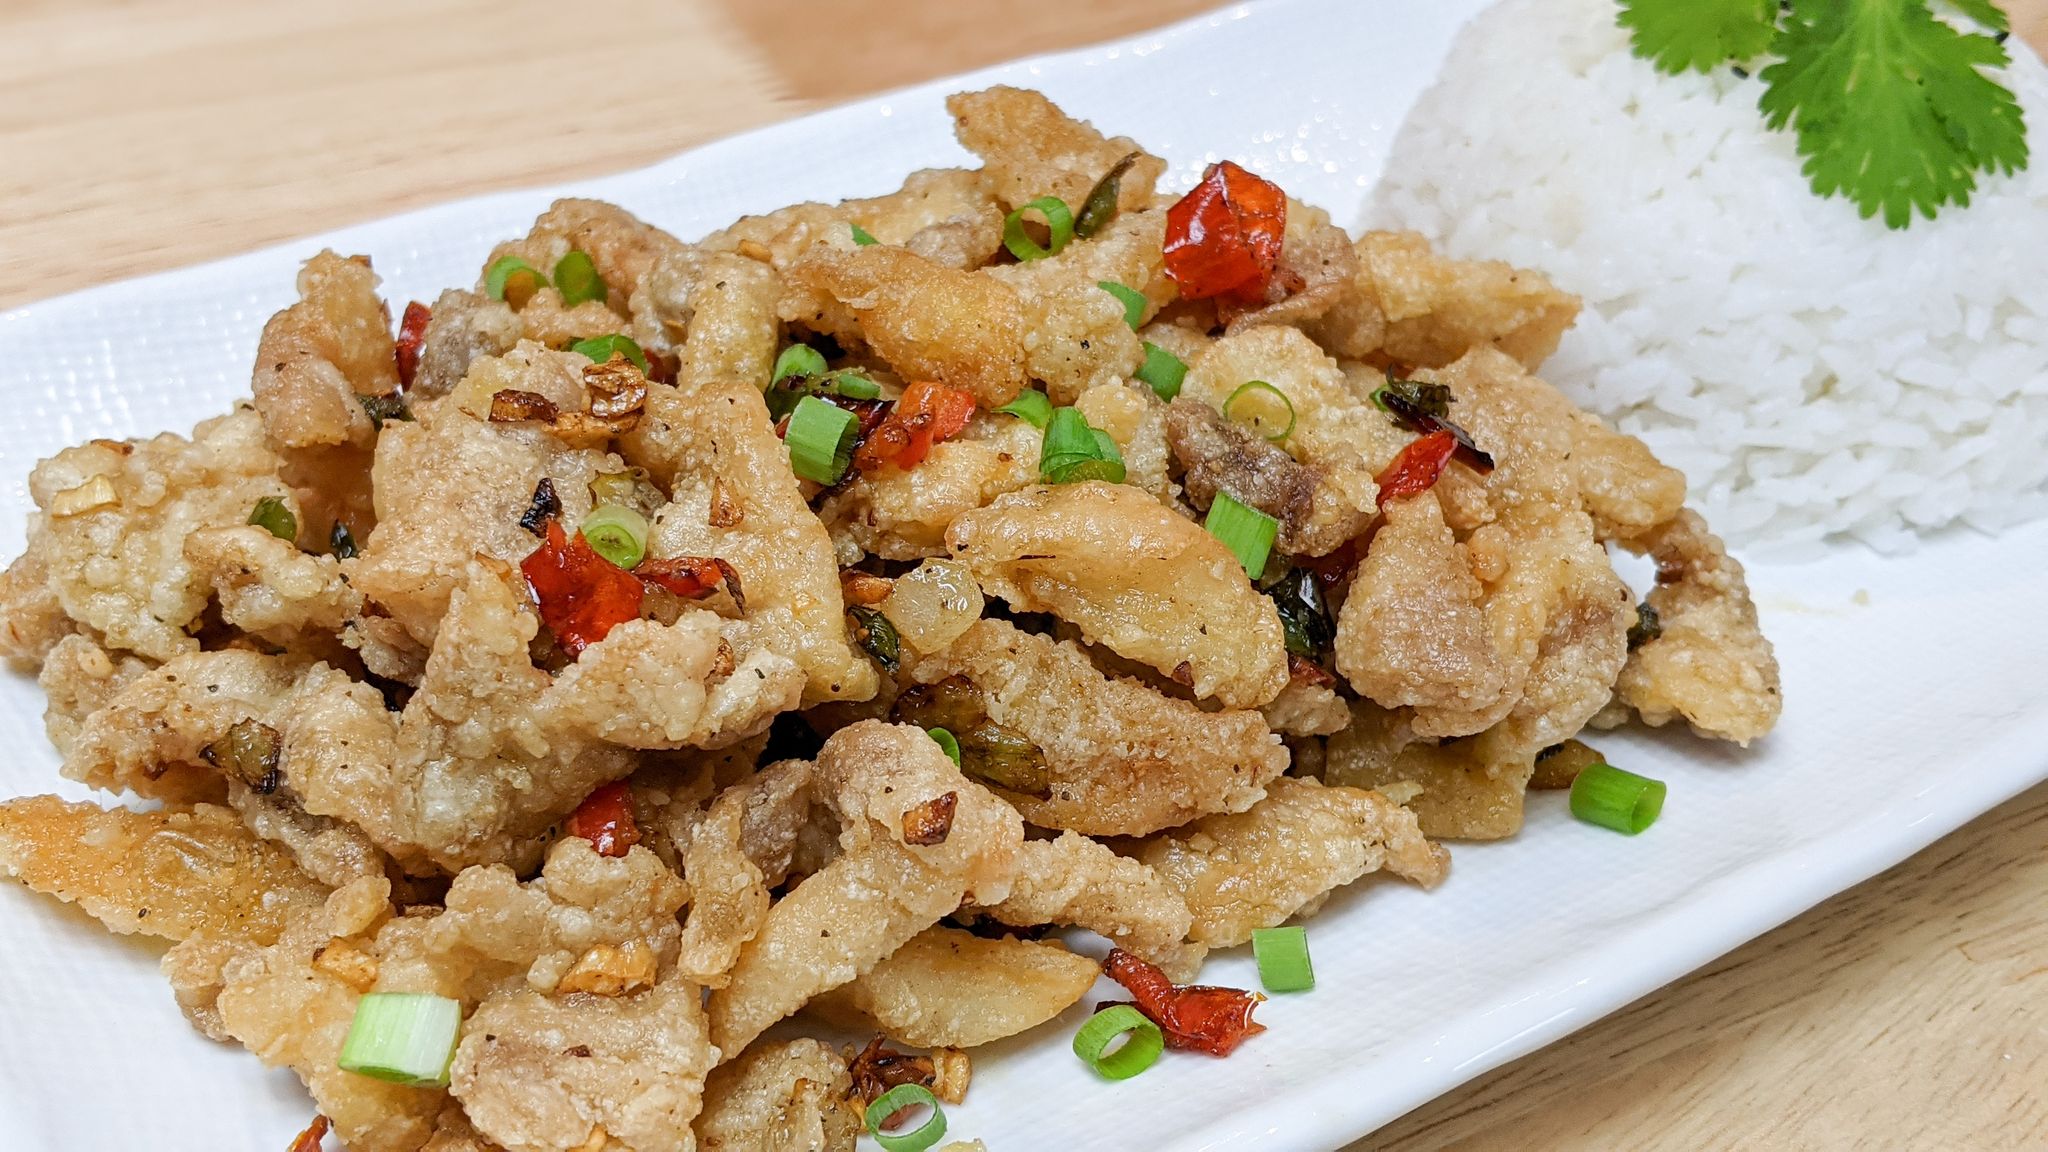 Recette de poulet frit sel et poivre - Hop dans le wok!